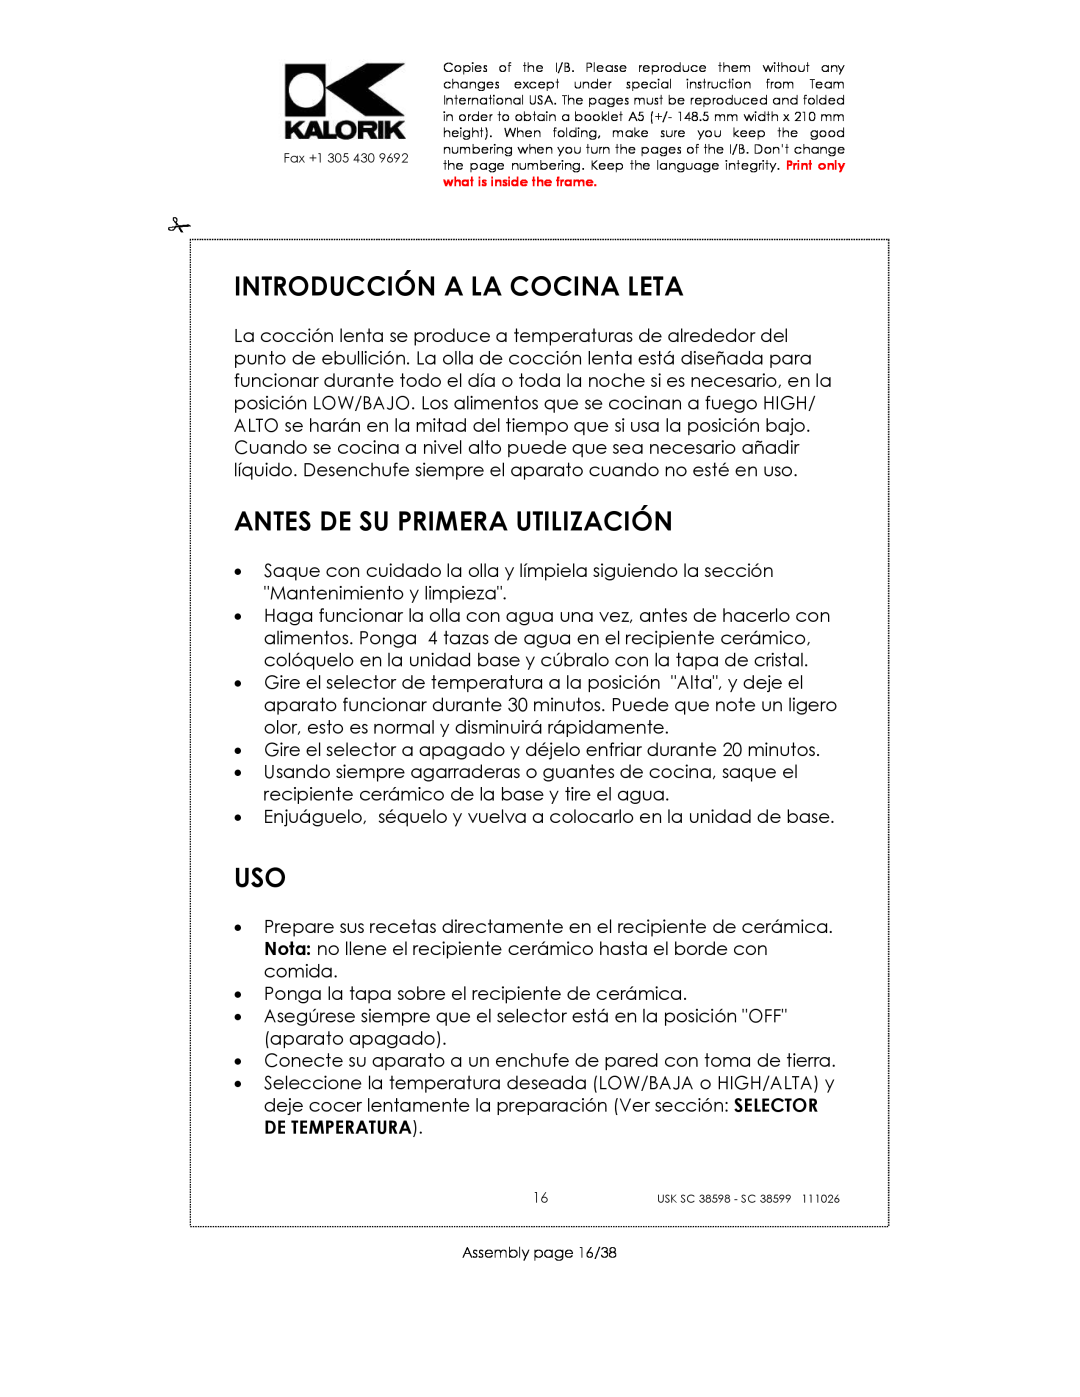 Kalorik usk sc 38598, 38599 manual Introducción A La Cocina Leta, Antes De Su Primera Utilización 